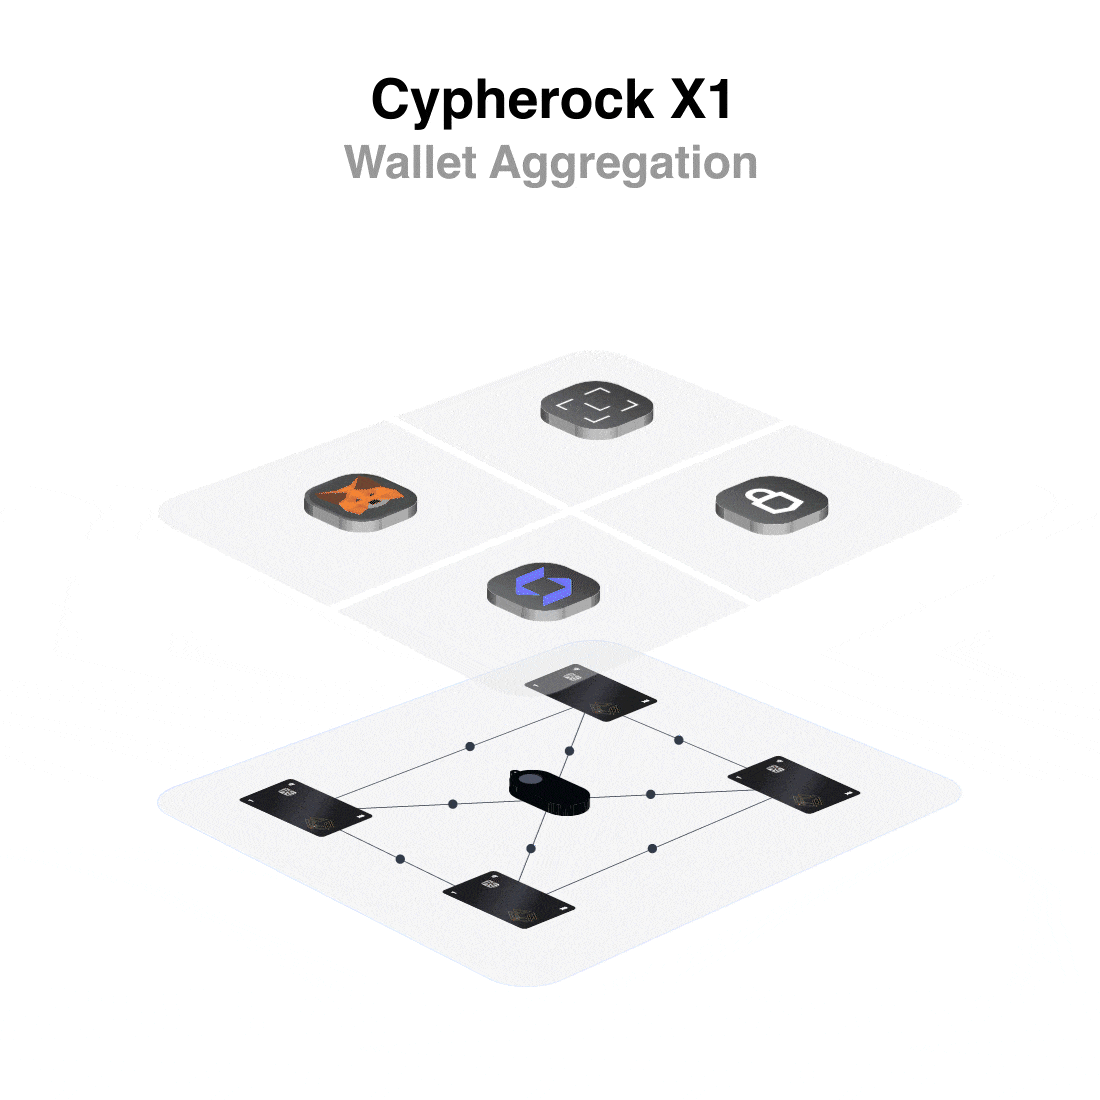 Cypherock Wallet Aggregation